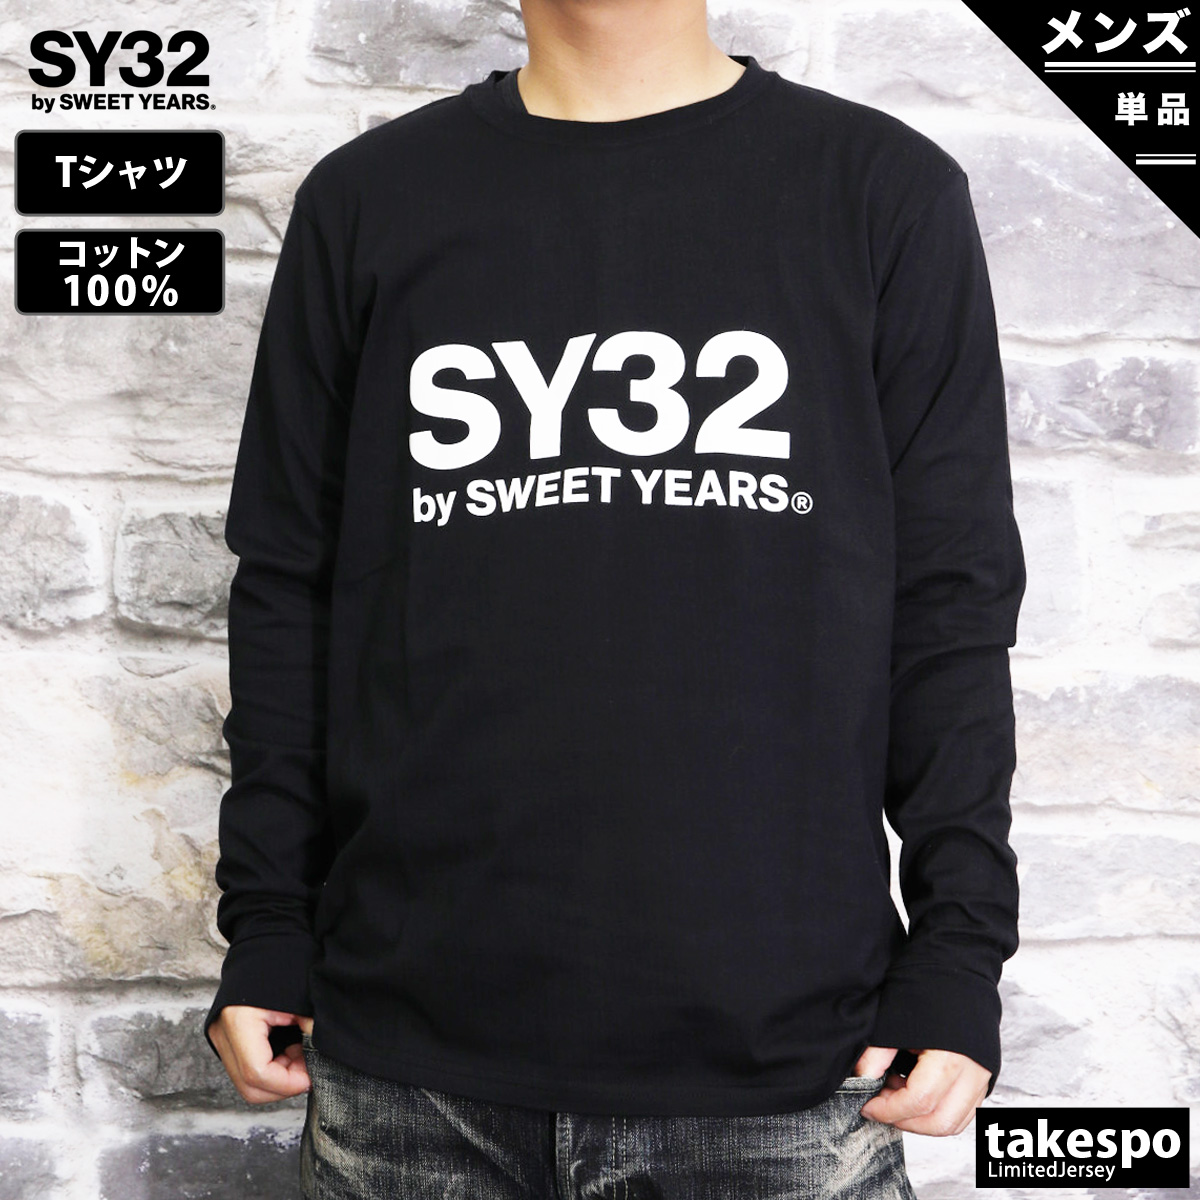 大特価定番 XL SY32 by SWEET YEARS ベーシックロゴ スウェットパンツ